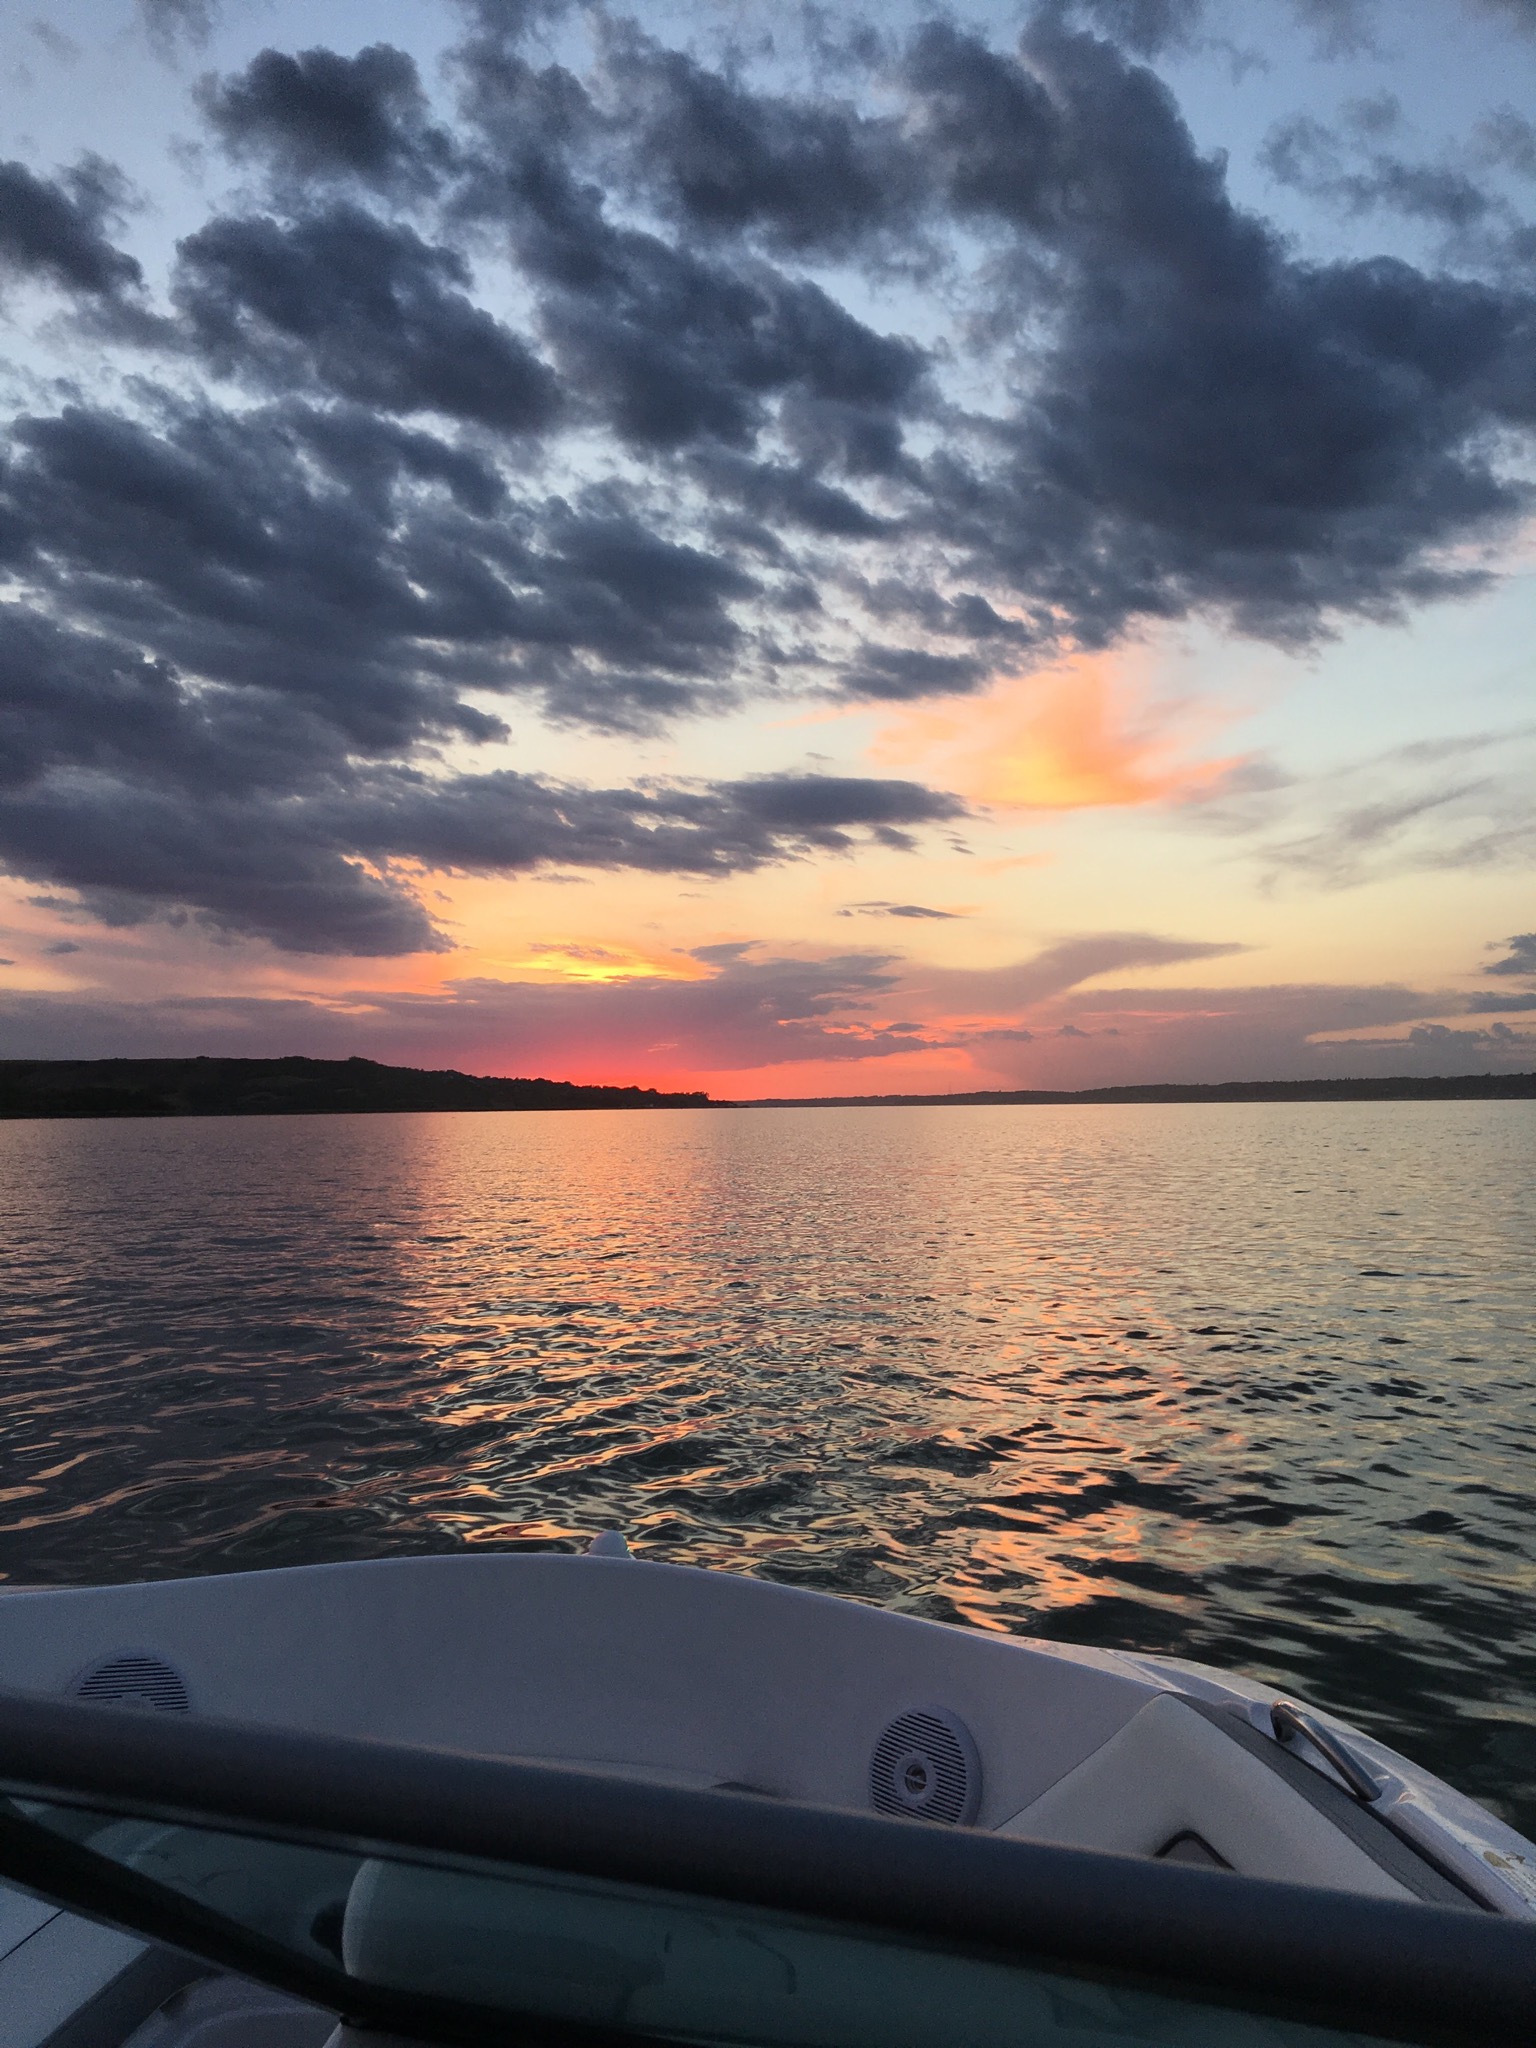 Sunset on Last Mountain Lake, Saskatchewan, Canada